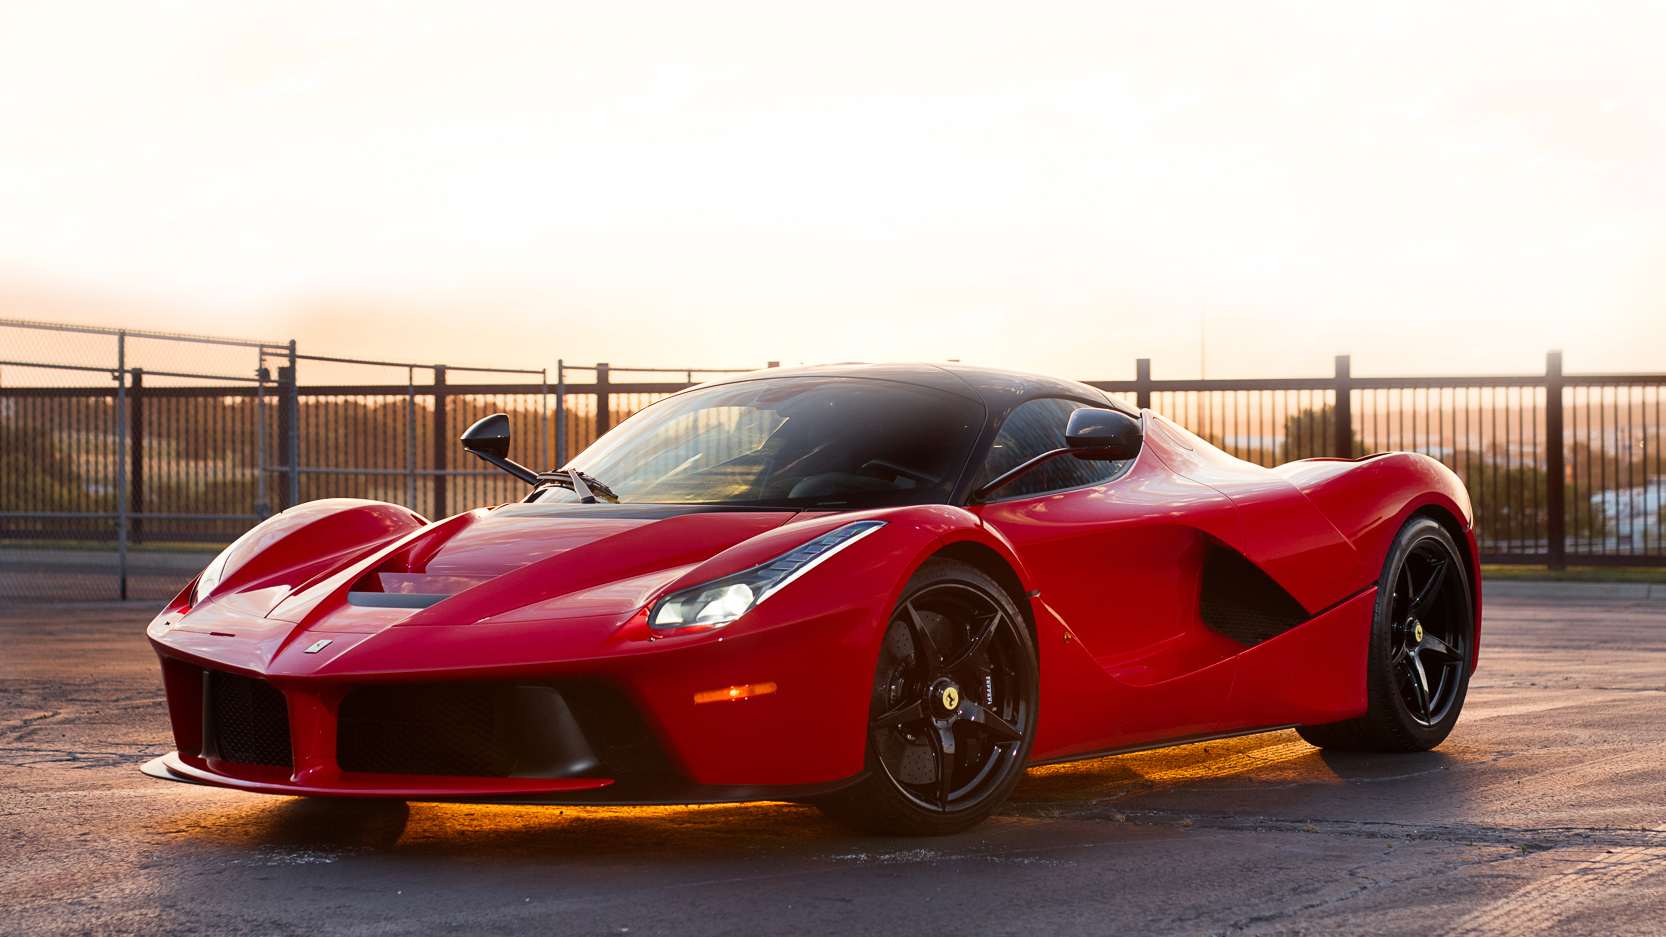 Ferrari LaFerrari: Price, Specs, Videos, Images, Performance & More